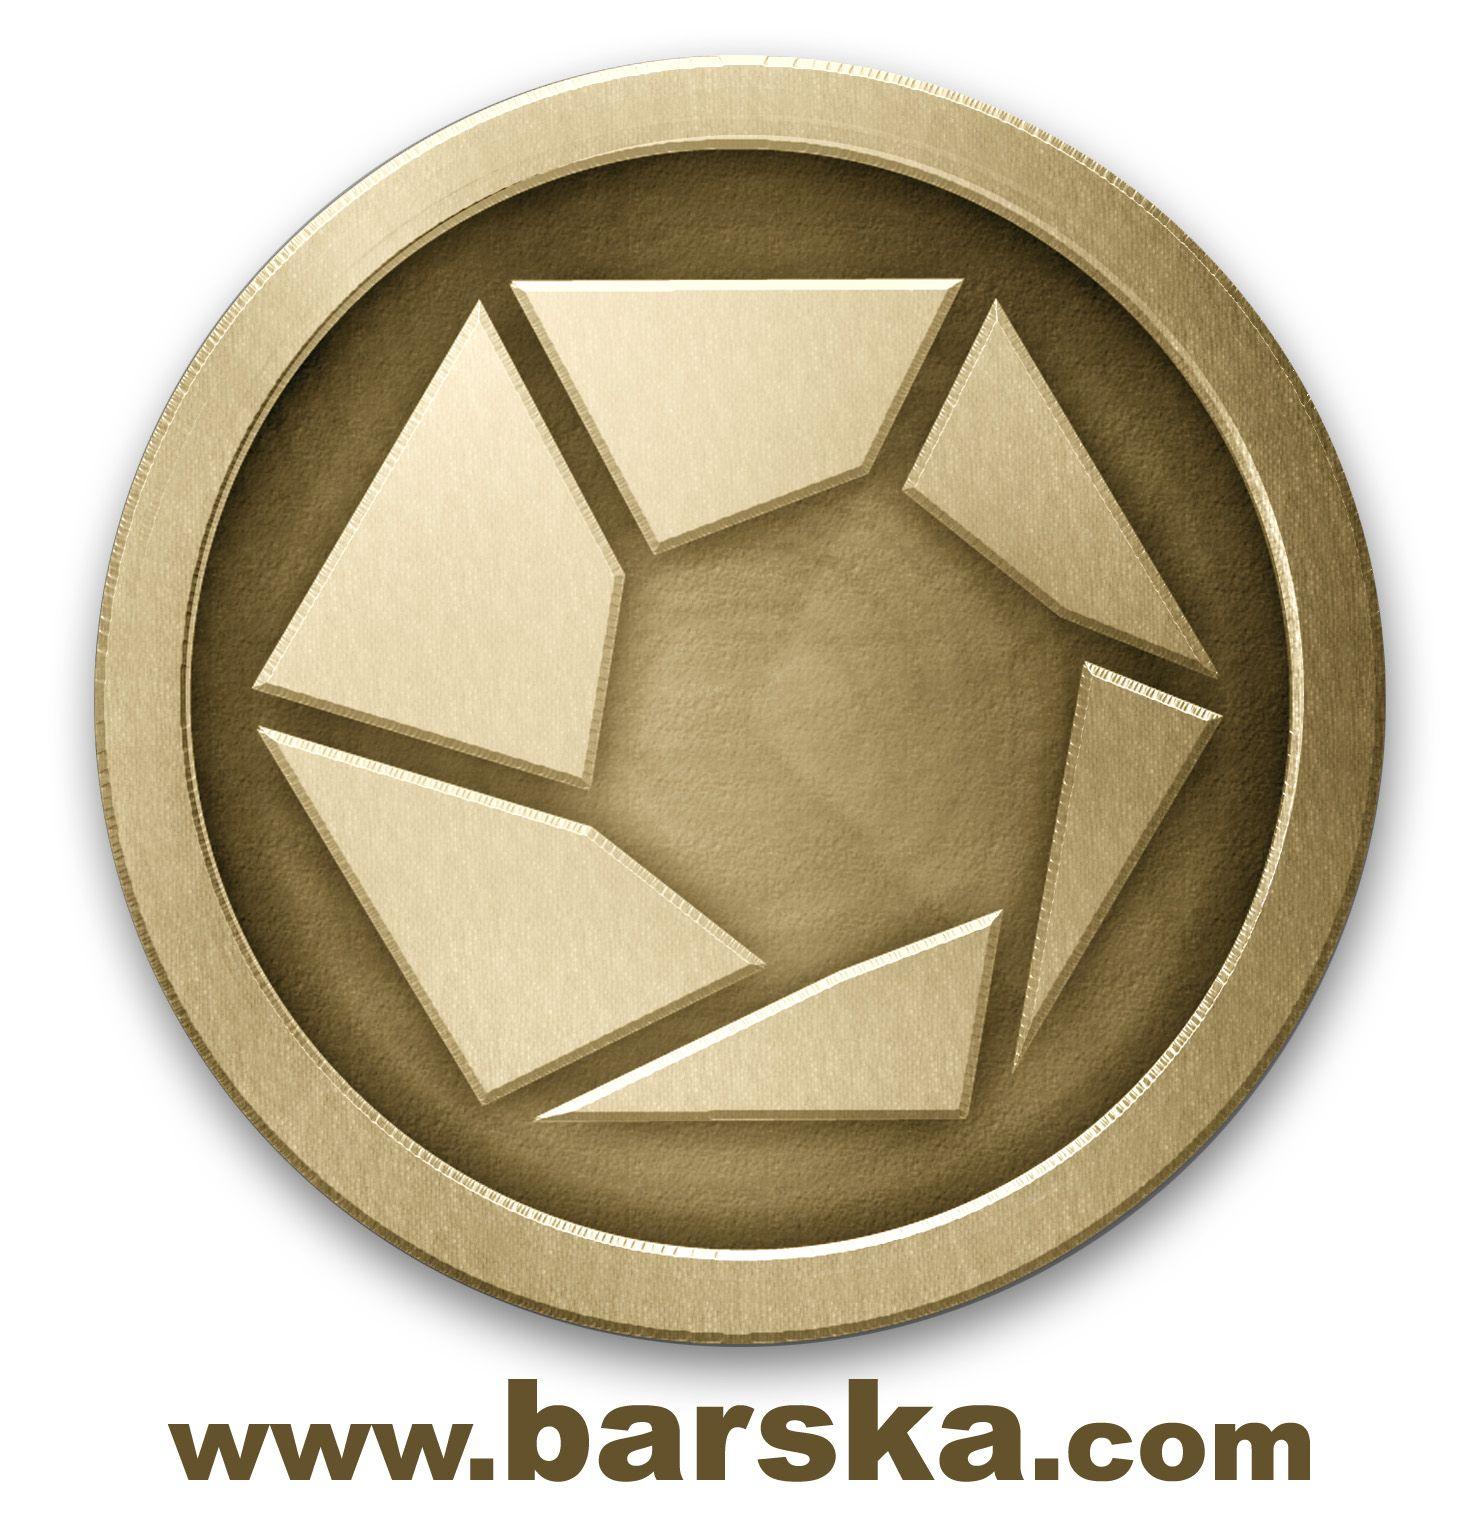 Barska Logo - Media Login